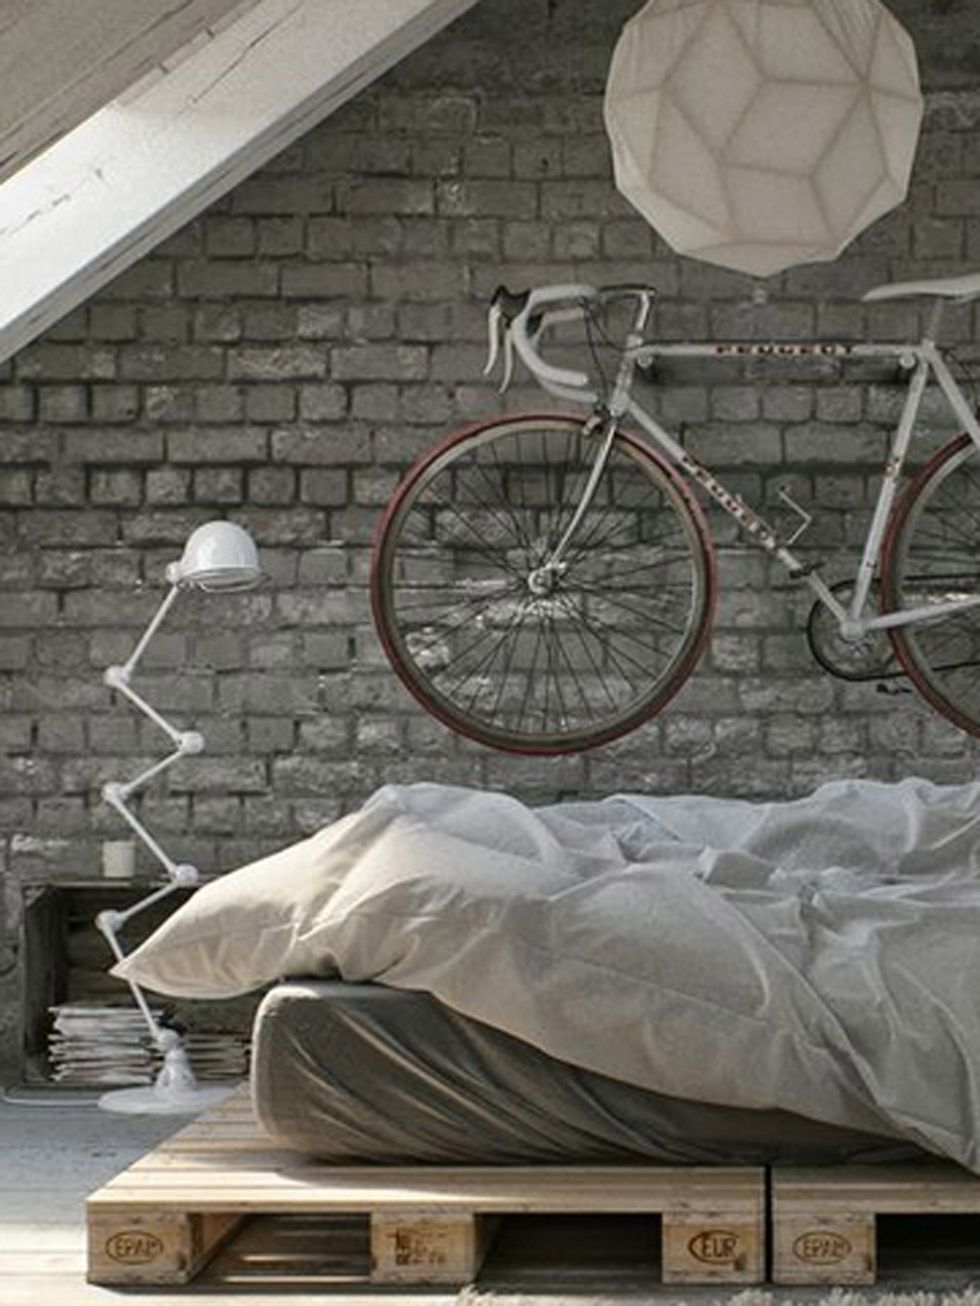 15 soluciones creativas para guardar la bici en casa